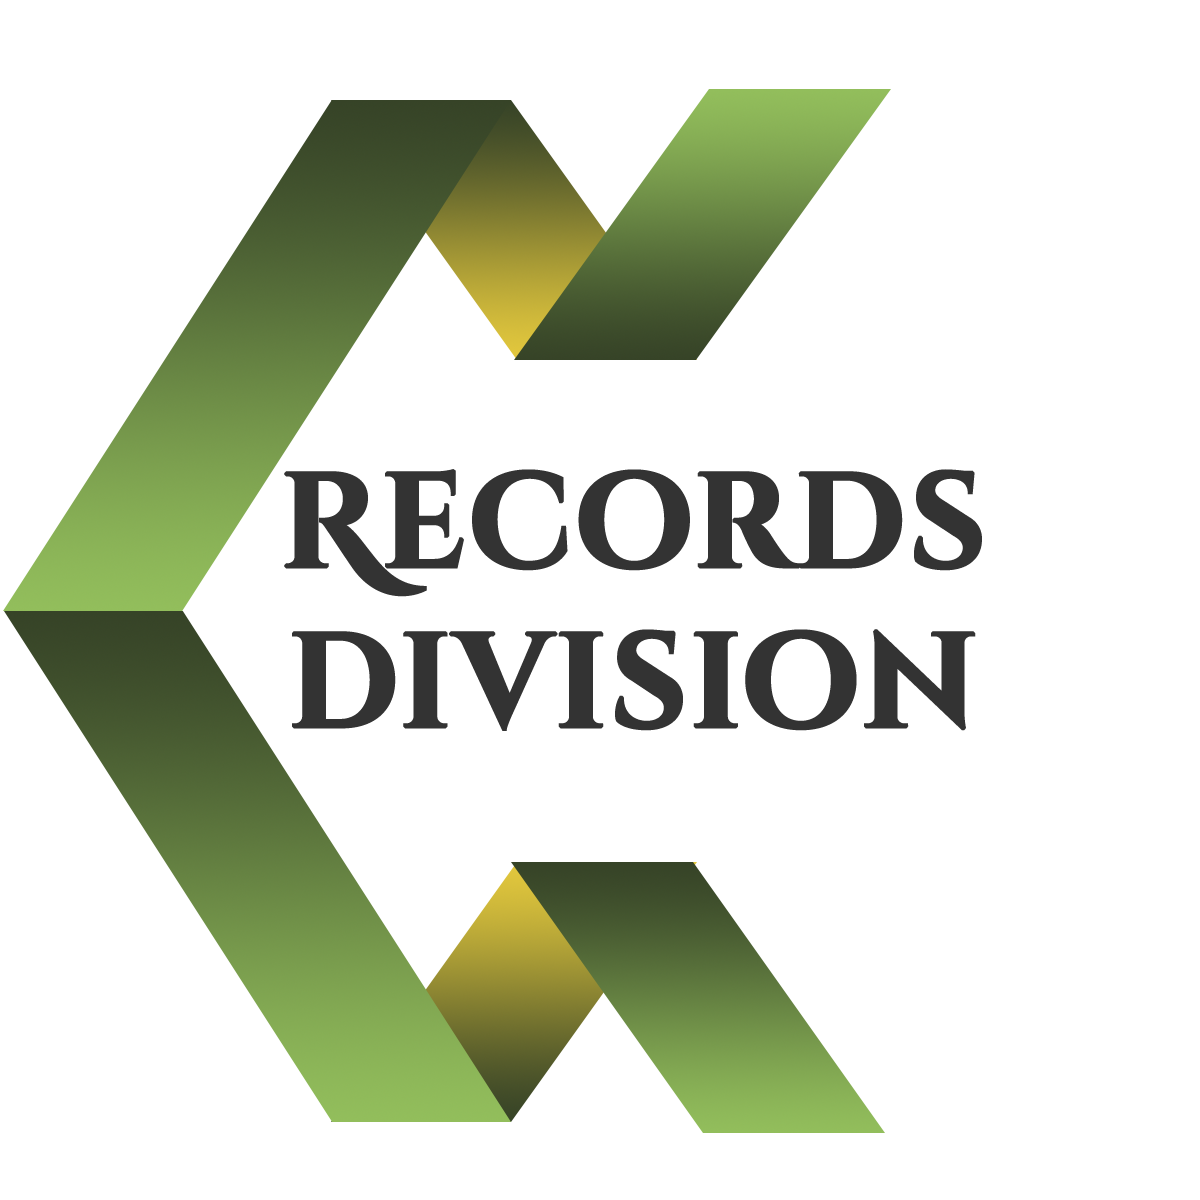 recordsDivisionLogo